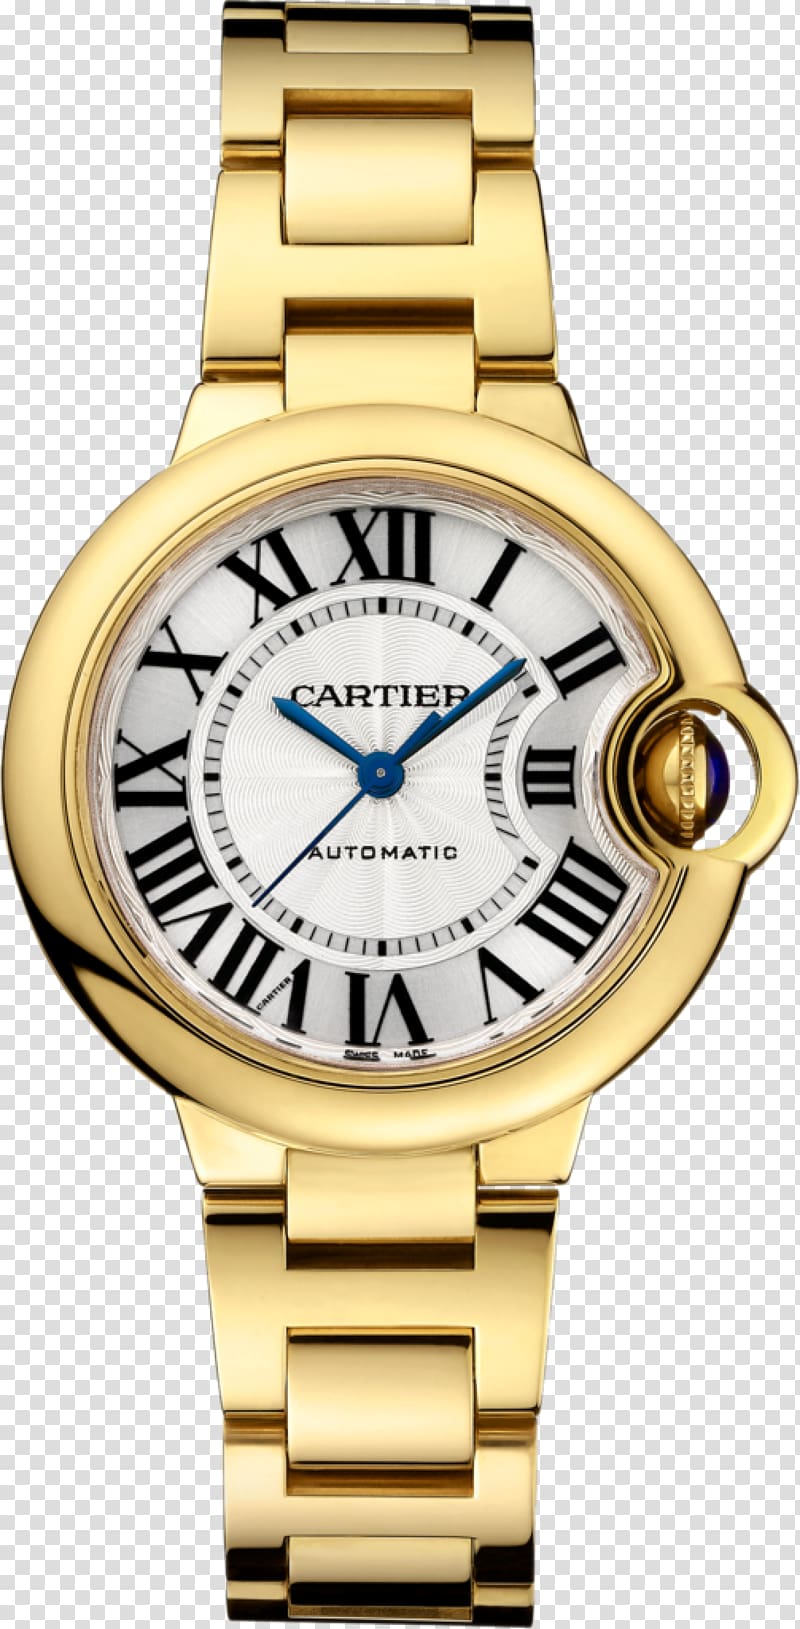 Cartier Ballon Bleu Automatic watch Gold, watch transparent background PNG clipart